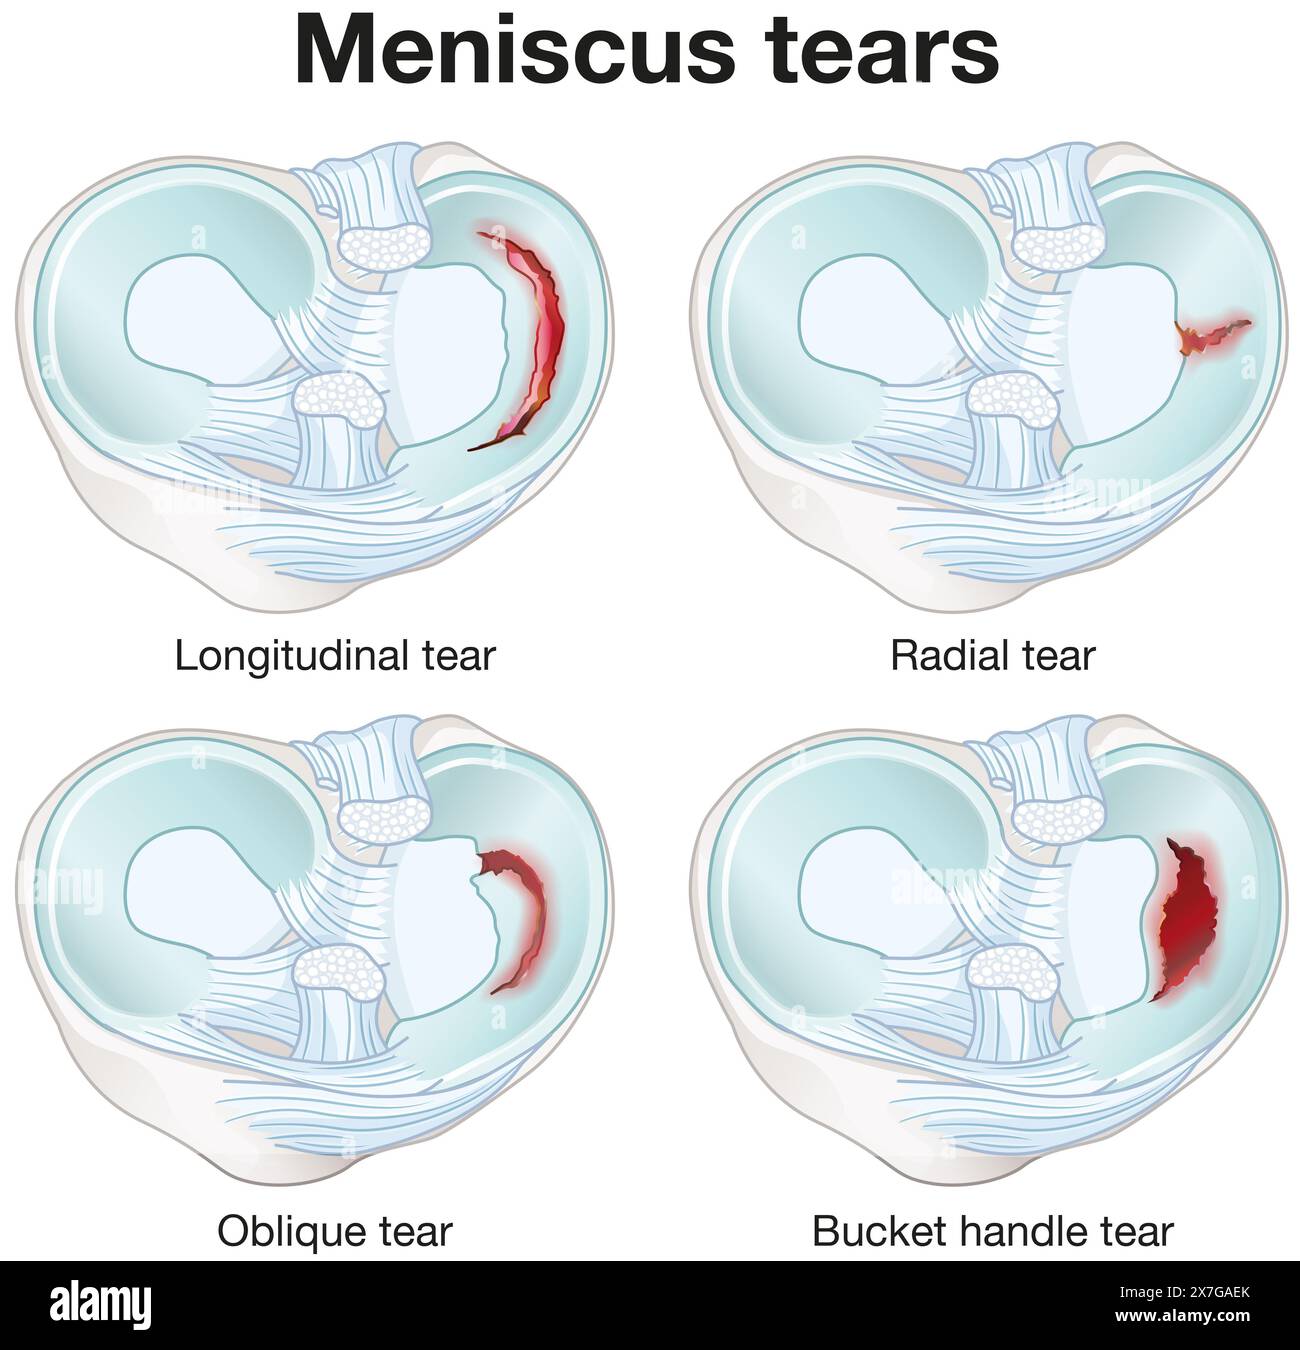 Le lacrime del menisco sono lesioni al ginocchio che causano dolore, gonfiore e movimento limitato, spesso dovute a movimenti sportivi o torsionali che richiedono un trattamento. Foto Stock